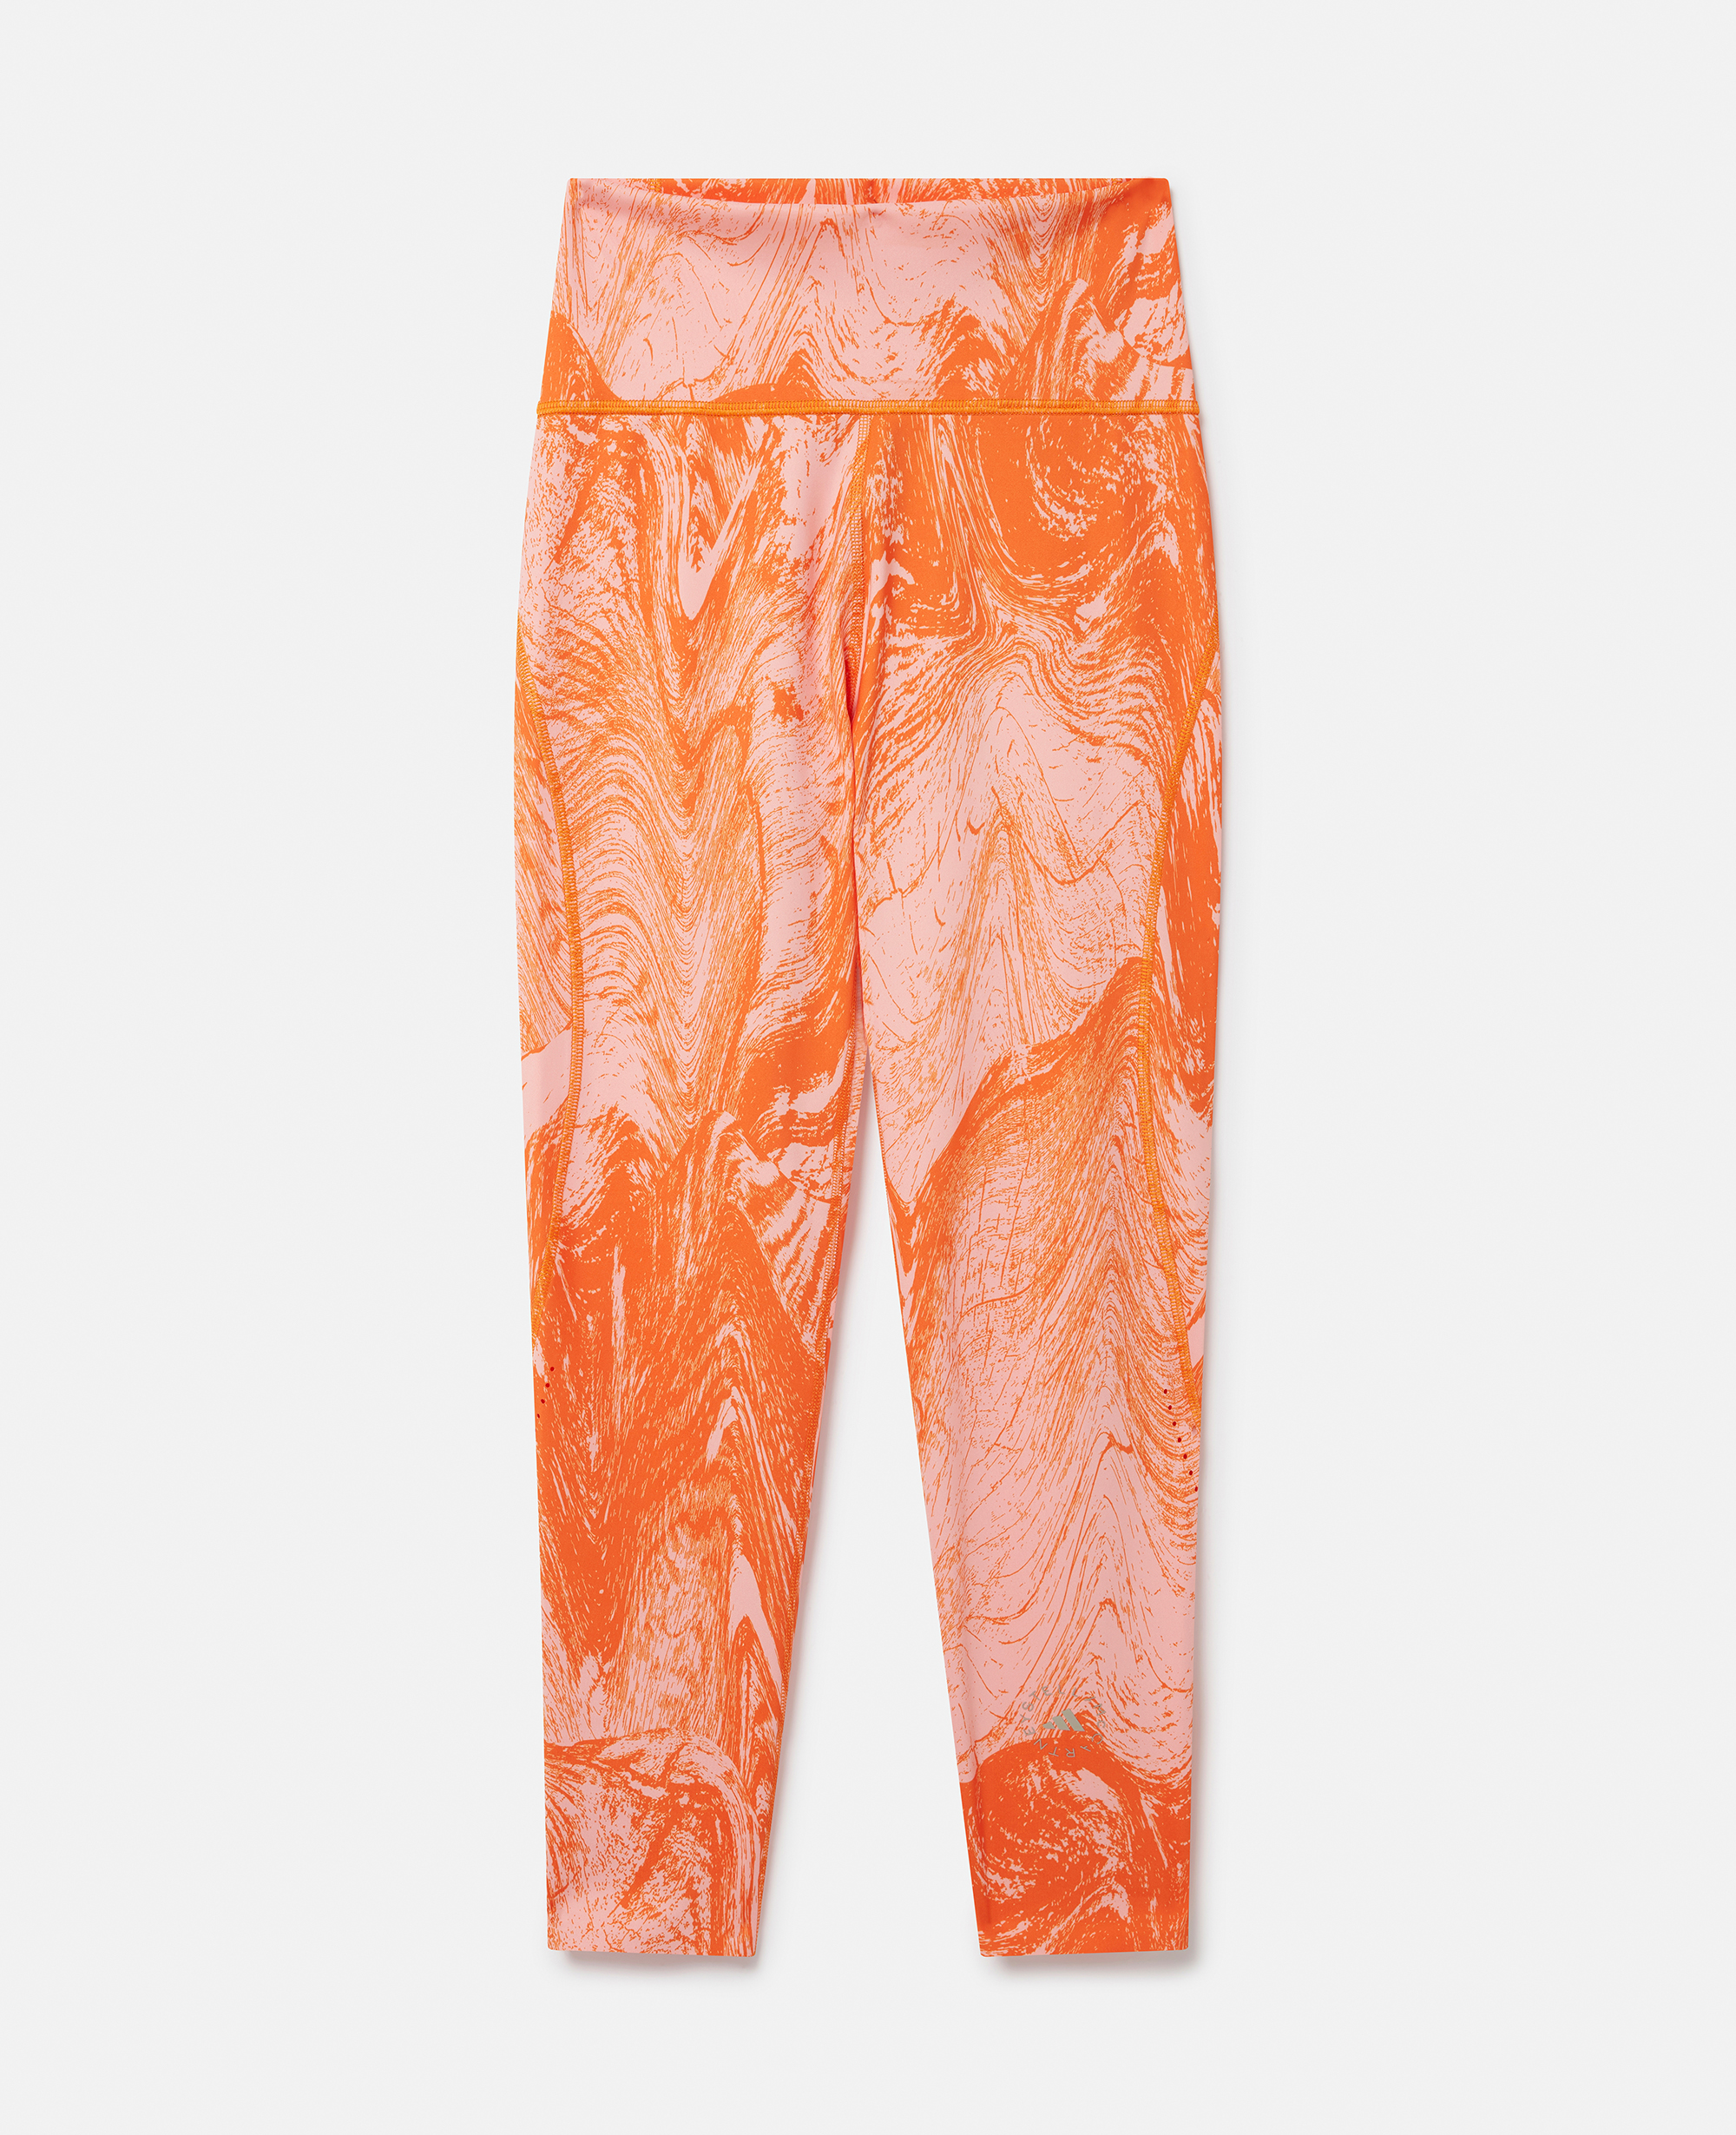 stella mccartney - legging d'entraînement 7/8 optime à imprimé bois moiré truepurpose, femme, orange unity/rouge flash clair, taille: s